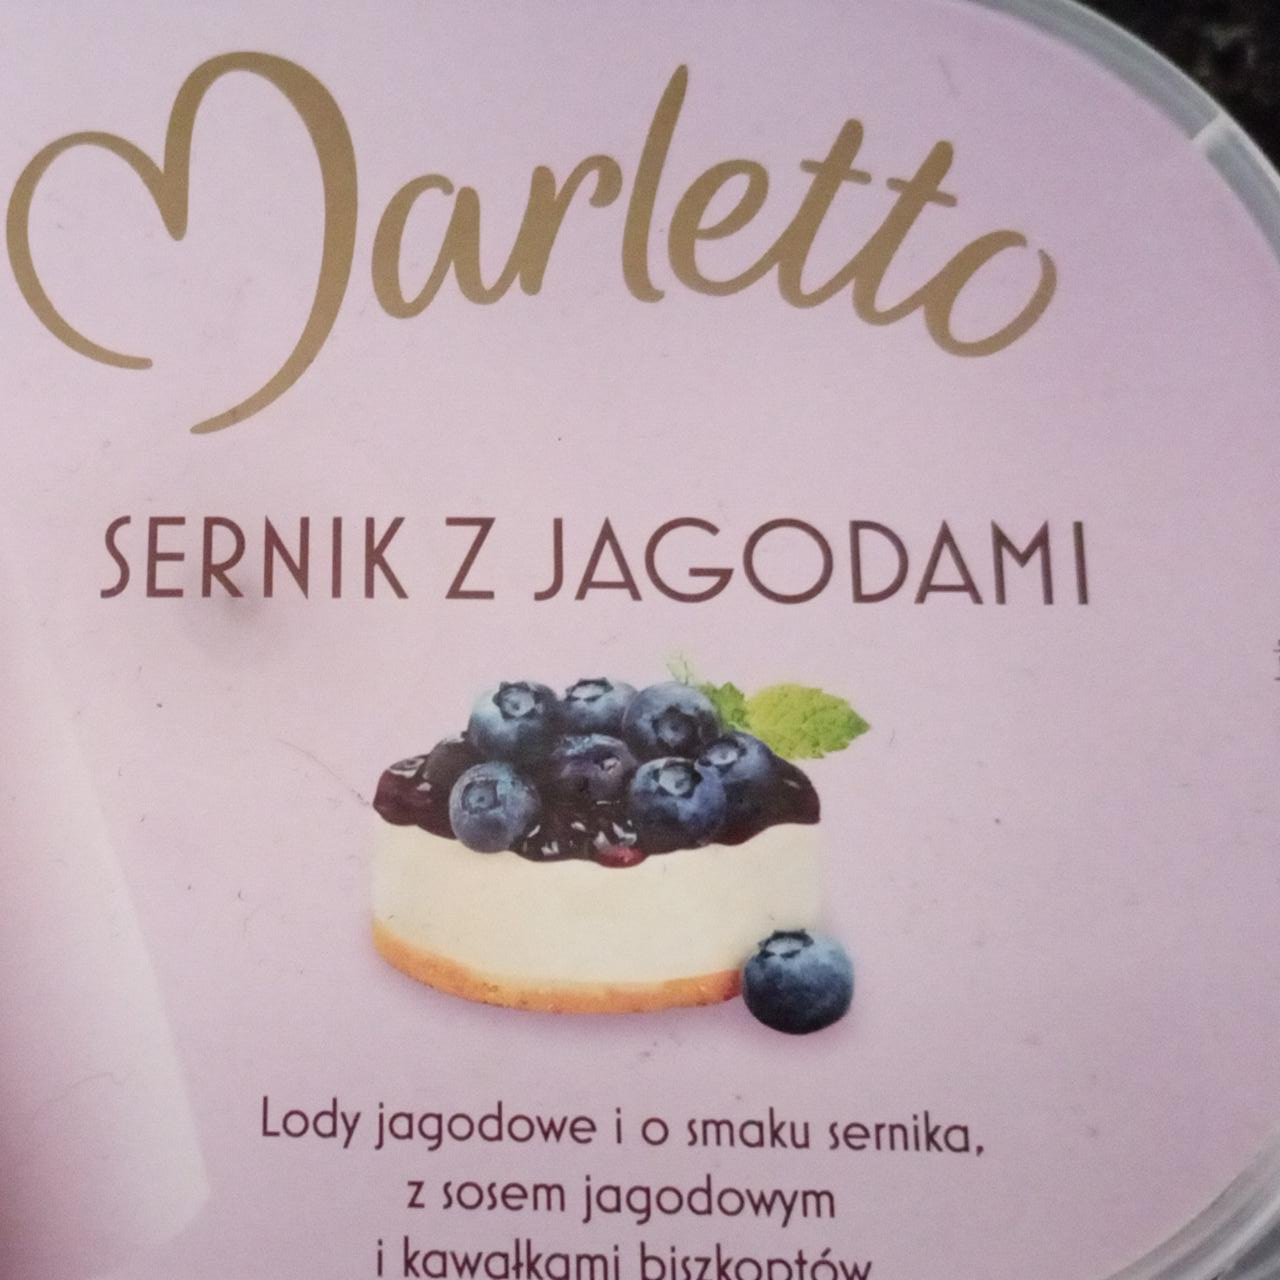 Фото - Морозиво зі смаком сирник з ягідним соусом Marletto